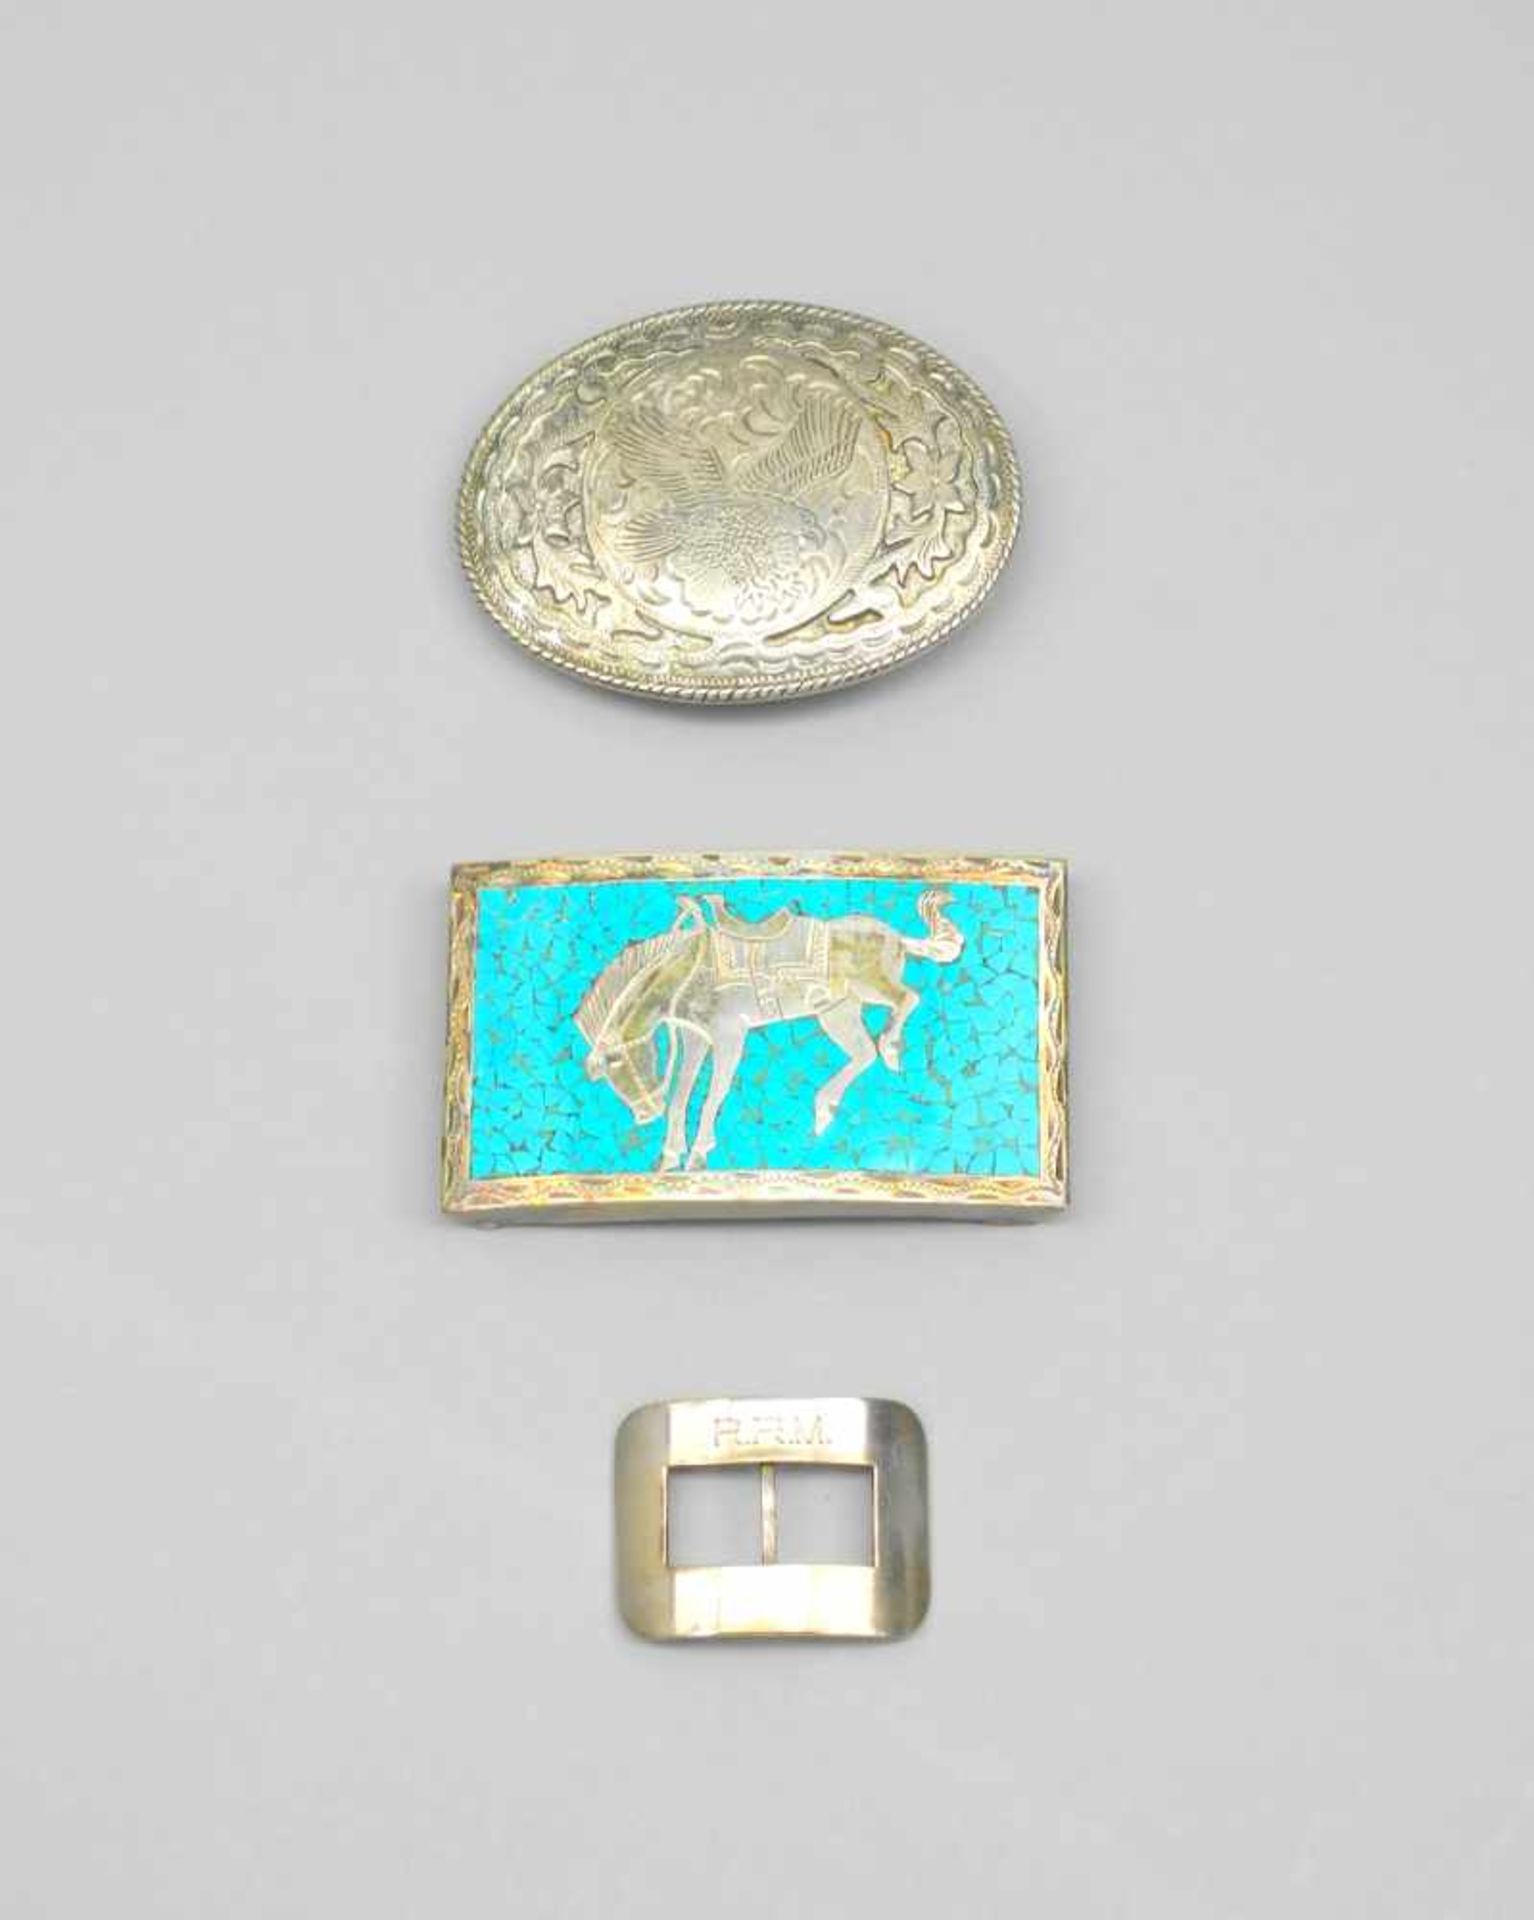 Silberne GürtelschnallenSterling Silber 925, jeweils rückseitig mit unterschiedlichen Punzen